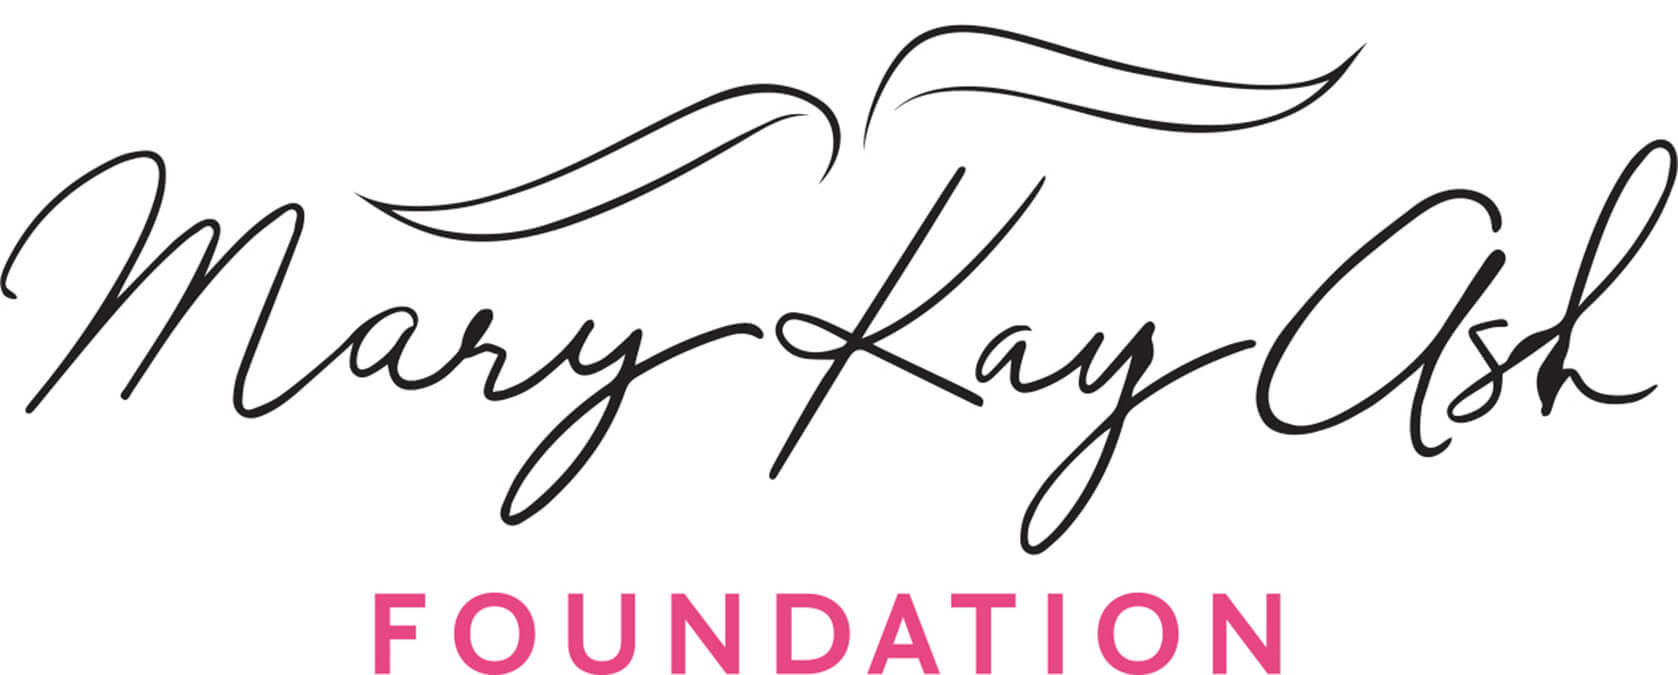 Mary Kay Ash Foundation Press Releases Mary Kay News Hub